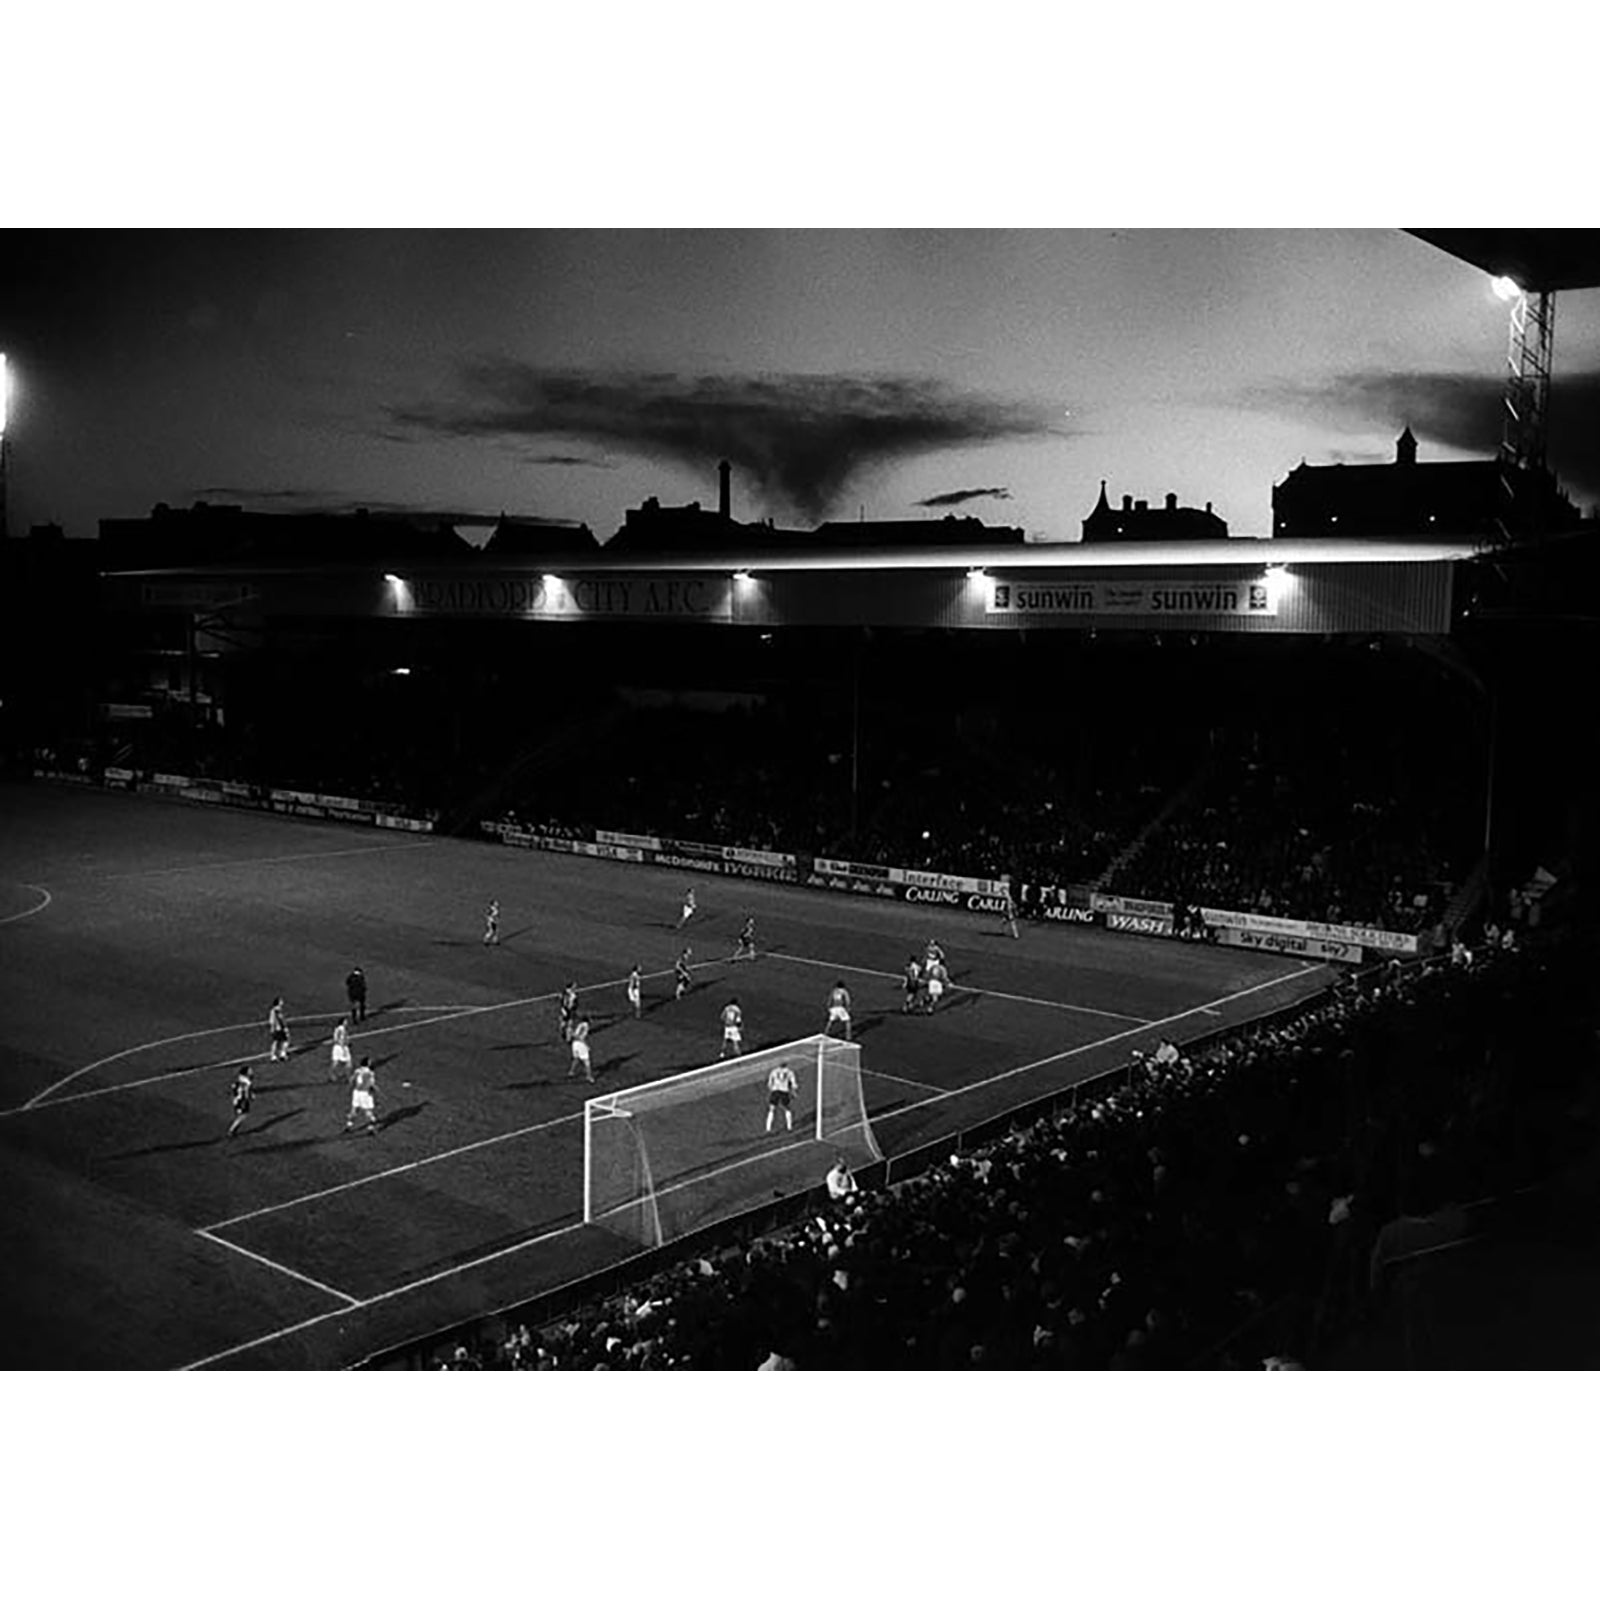 Ian Beesley — Football Fans